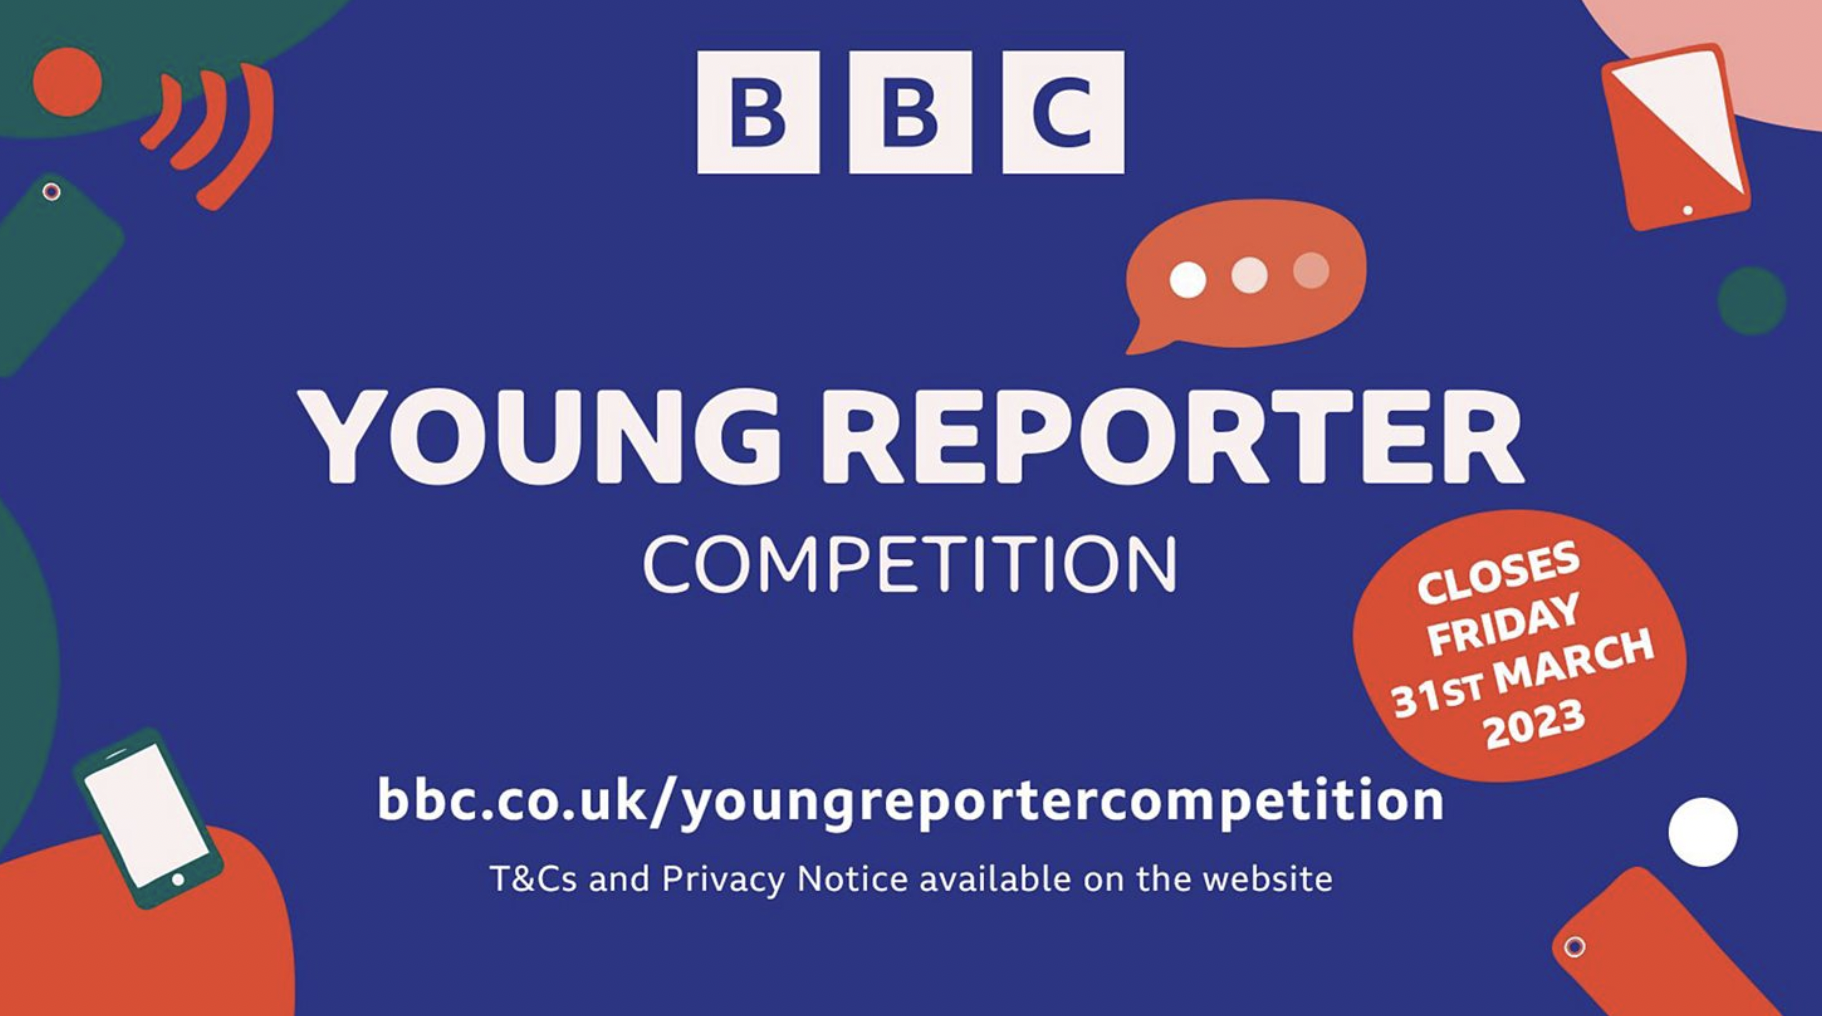 BBC : une nouvelle édition du concours BBC Young Reporter